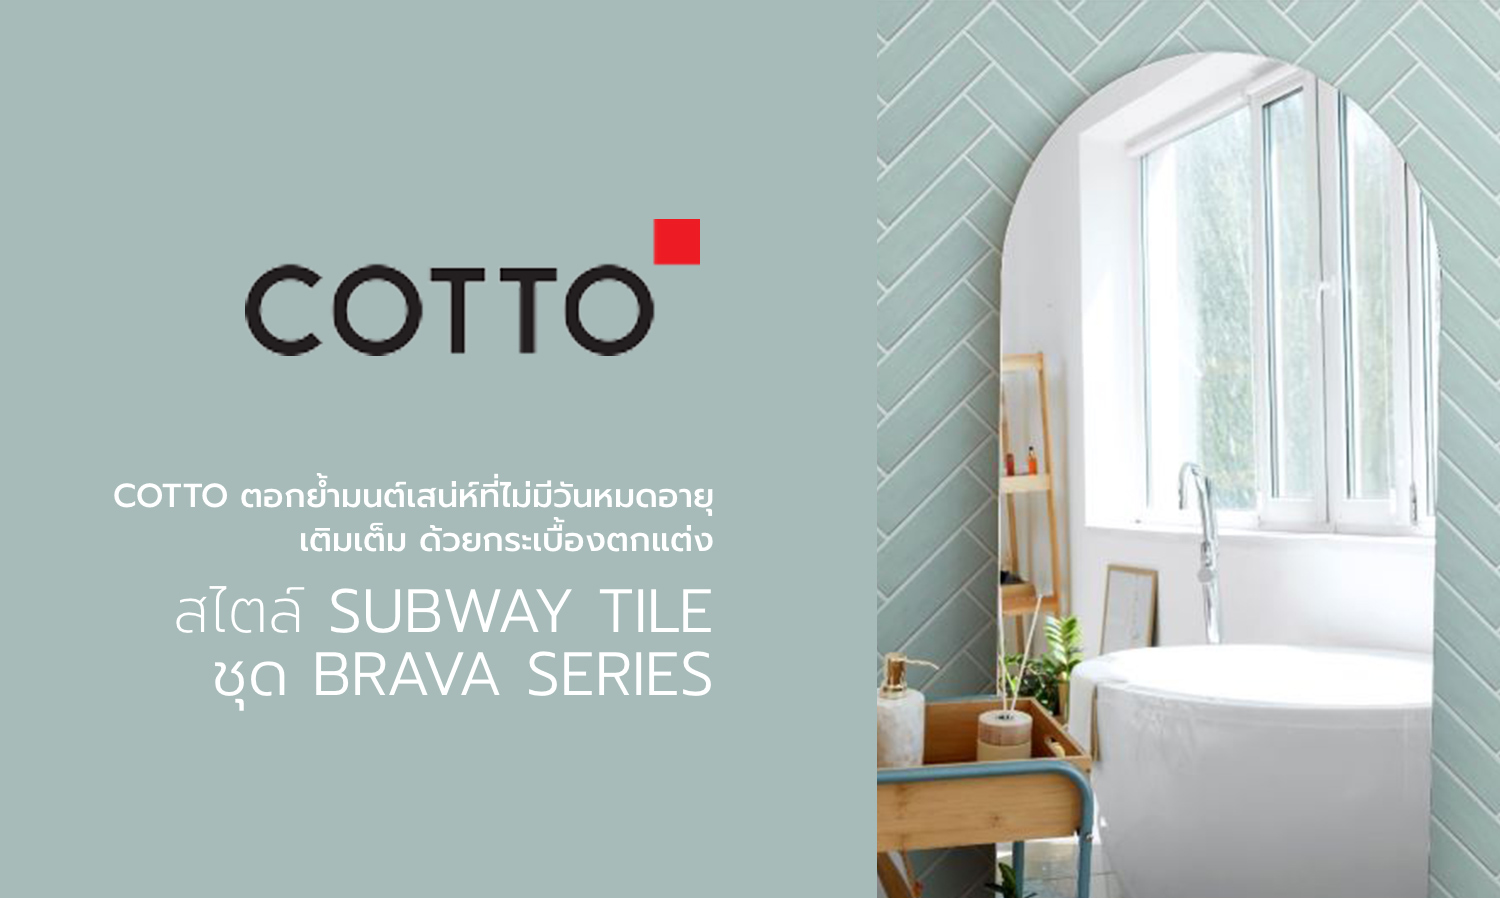 cotto-ตอกย้ำมนต์เสน่ห์ที่ไม่มีวันหมดอายุ-เติมเต็ม-ด้วยกระเบื้องตกแต่ง-สไตล์-subway-tile-ชุด-brava-series-